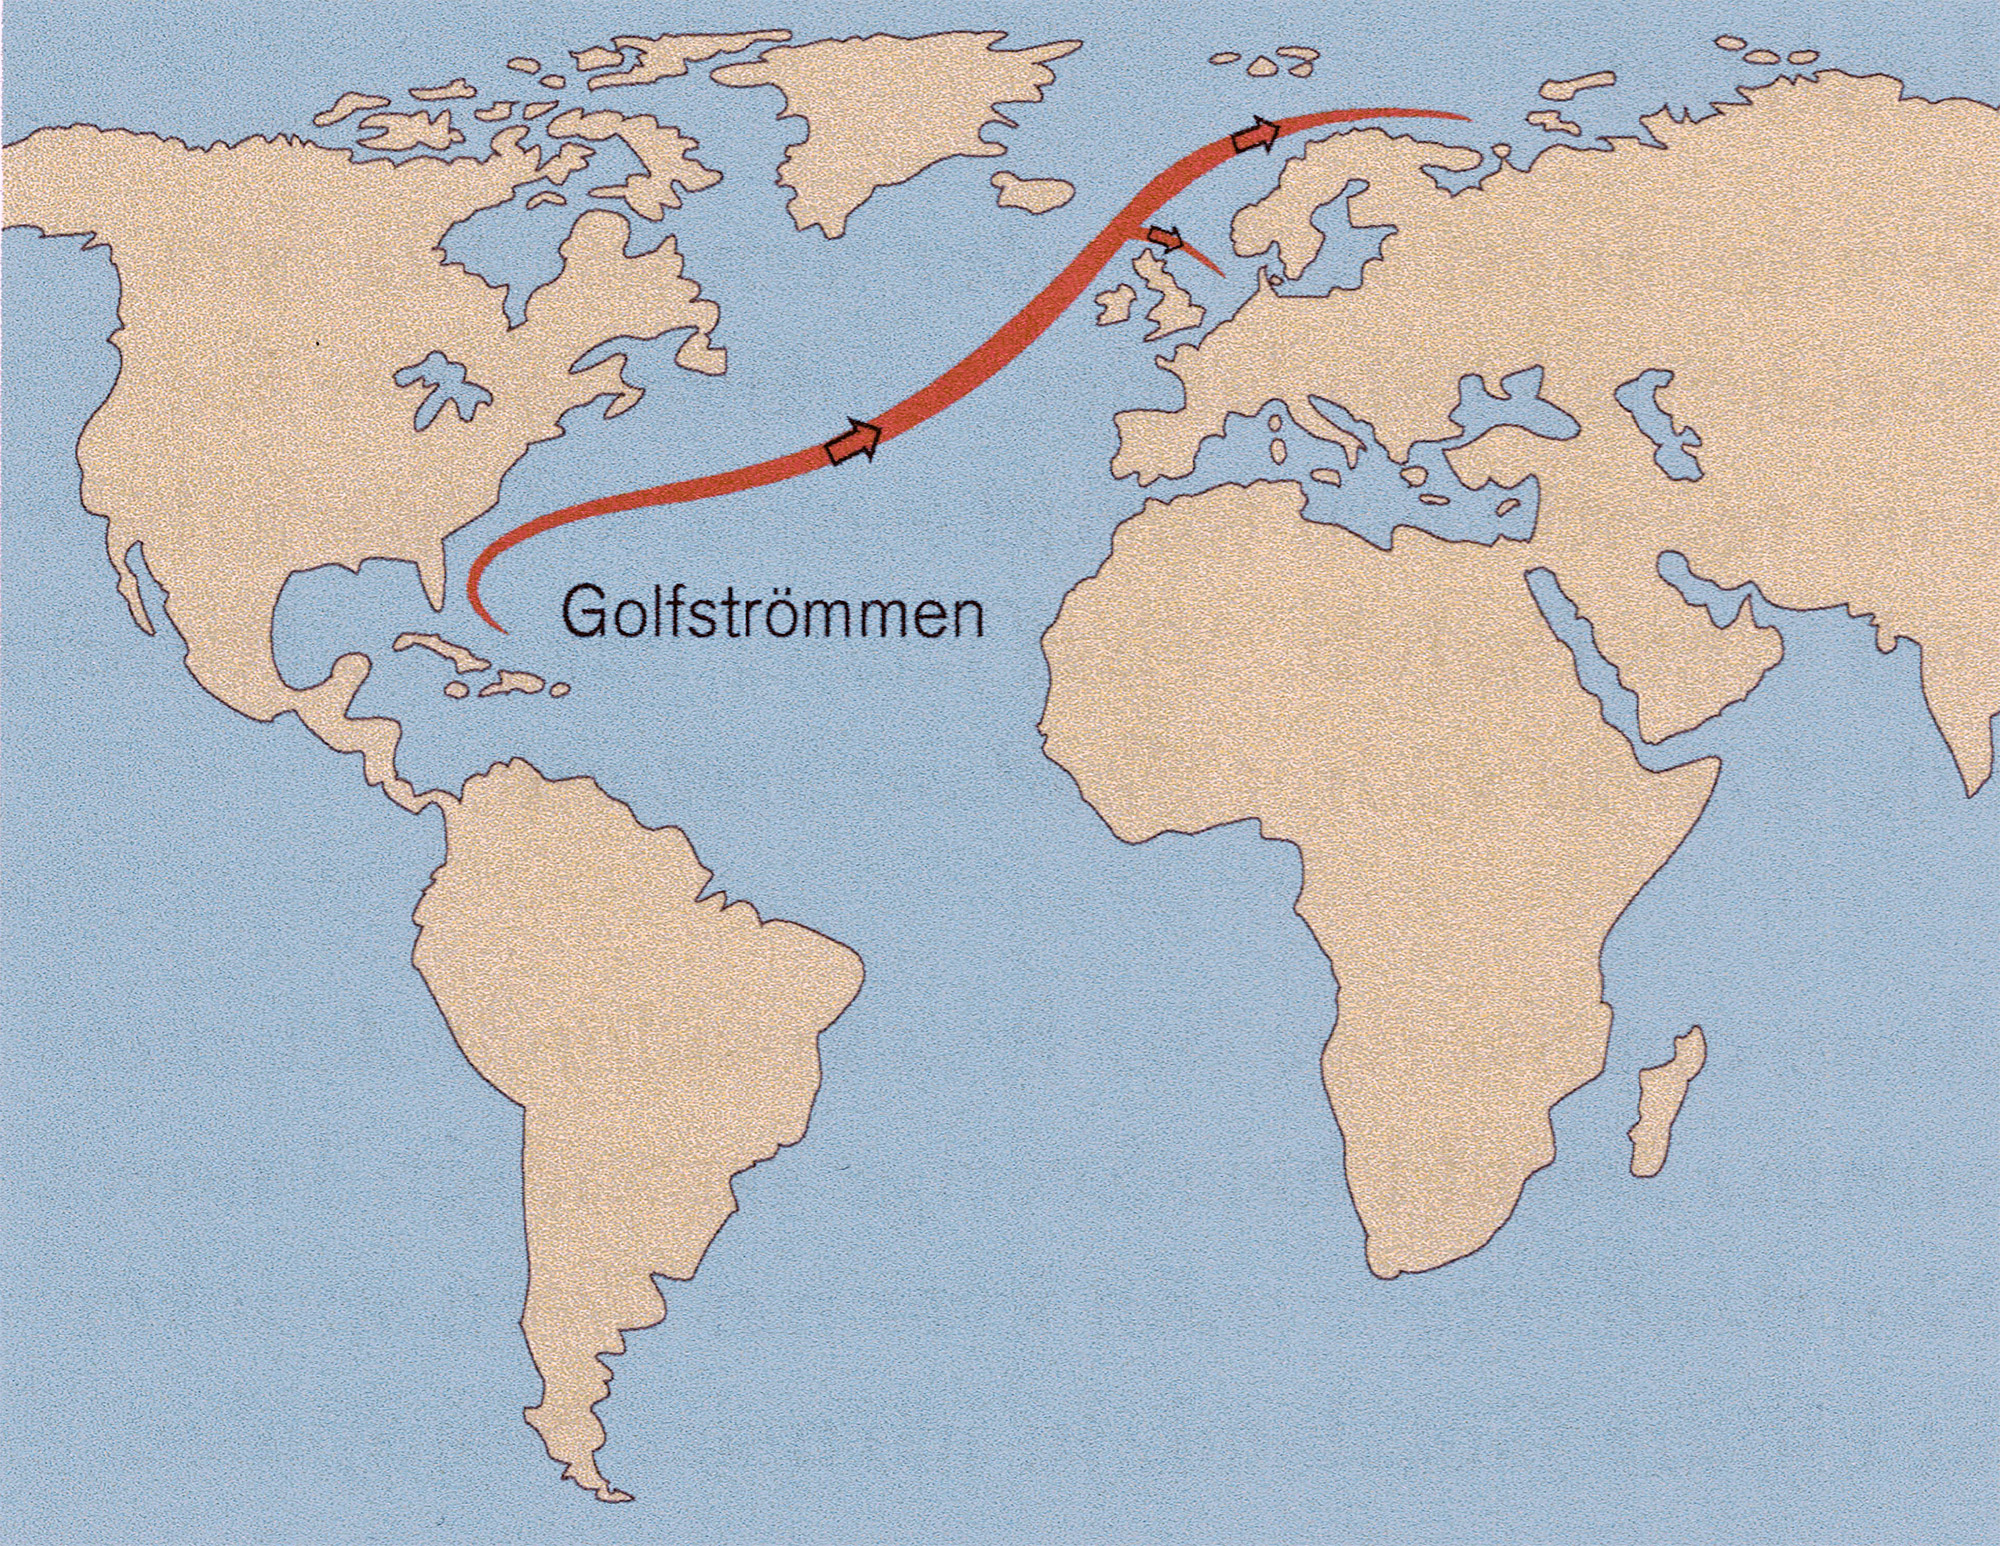 Förenklad karta över Golfströmmen